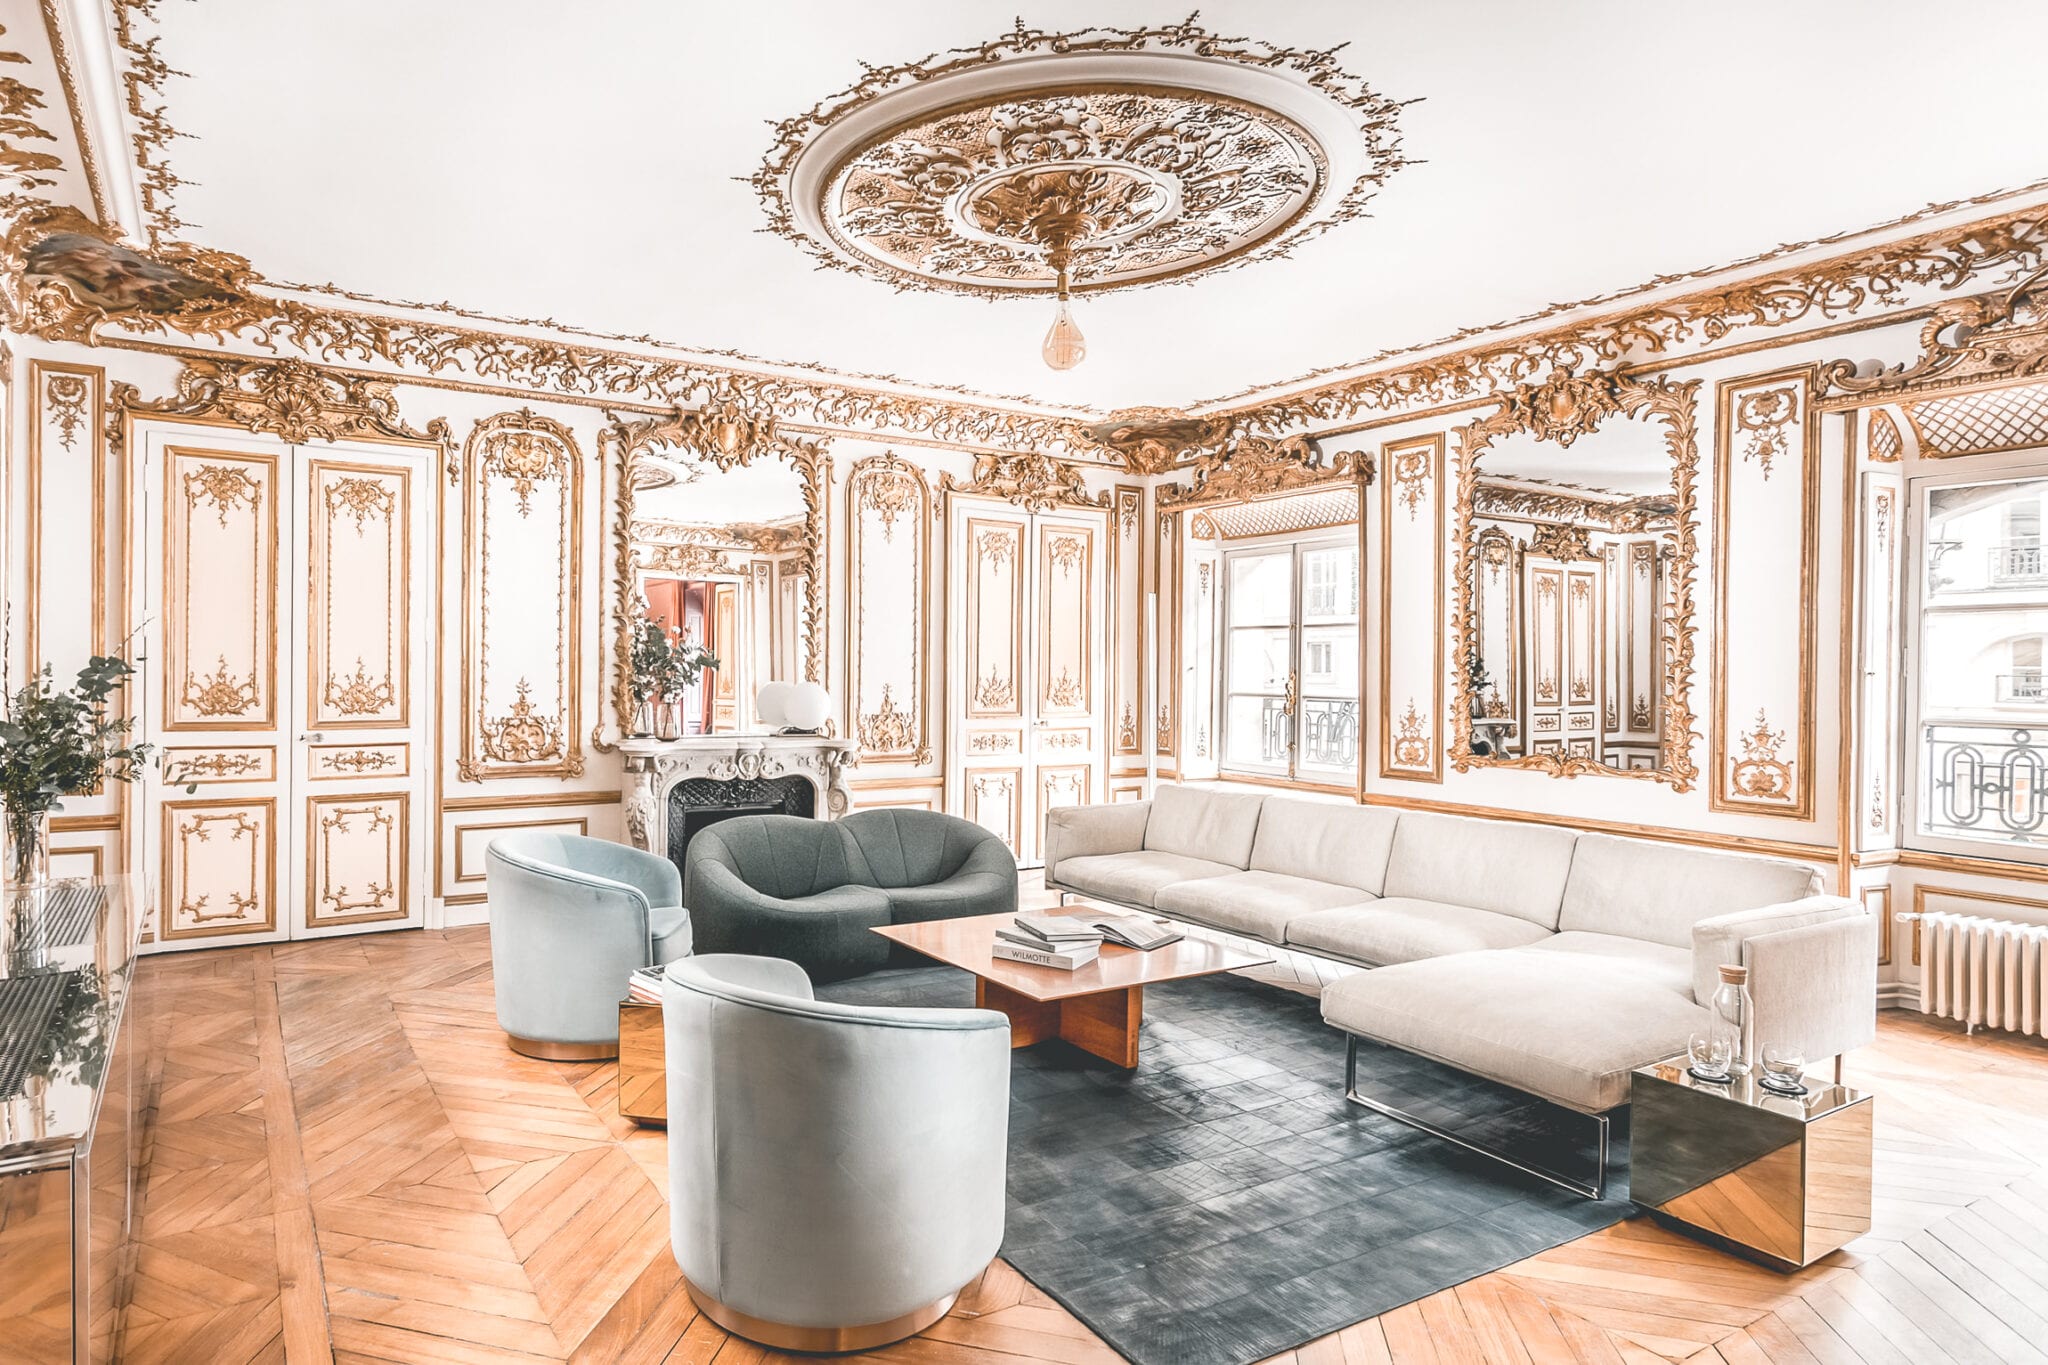 Champs-Élysées, Airbnb Finds: Koninklijk verblijf aan de Champs-Elysees